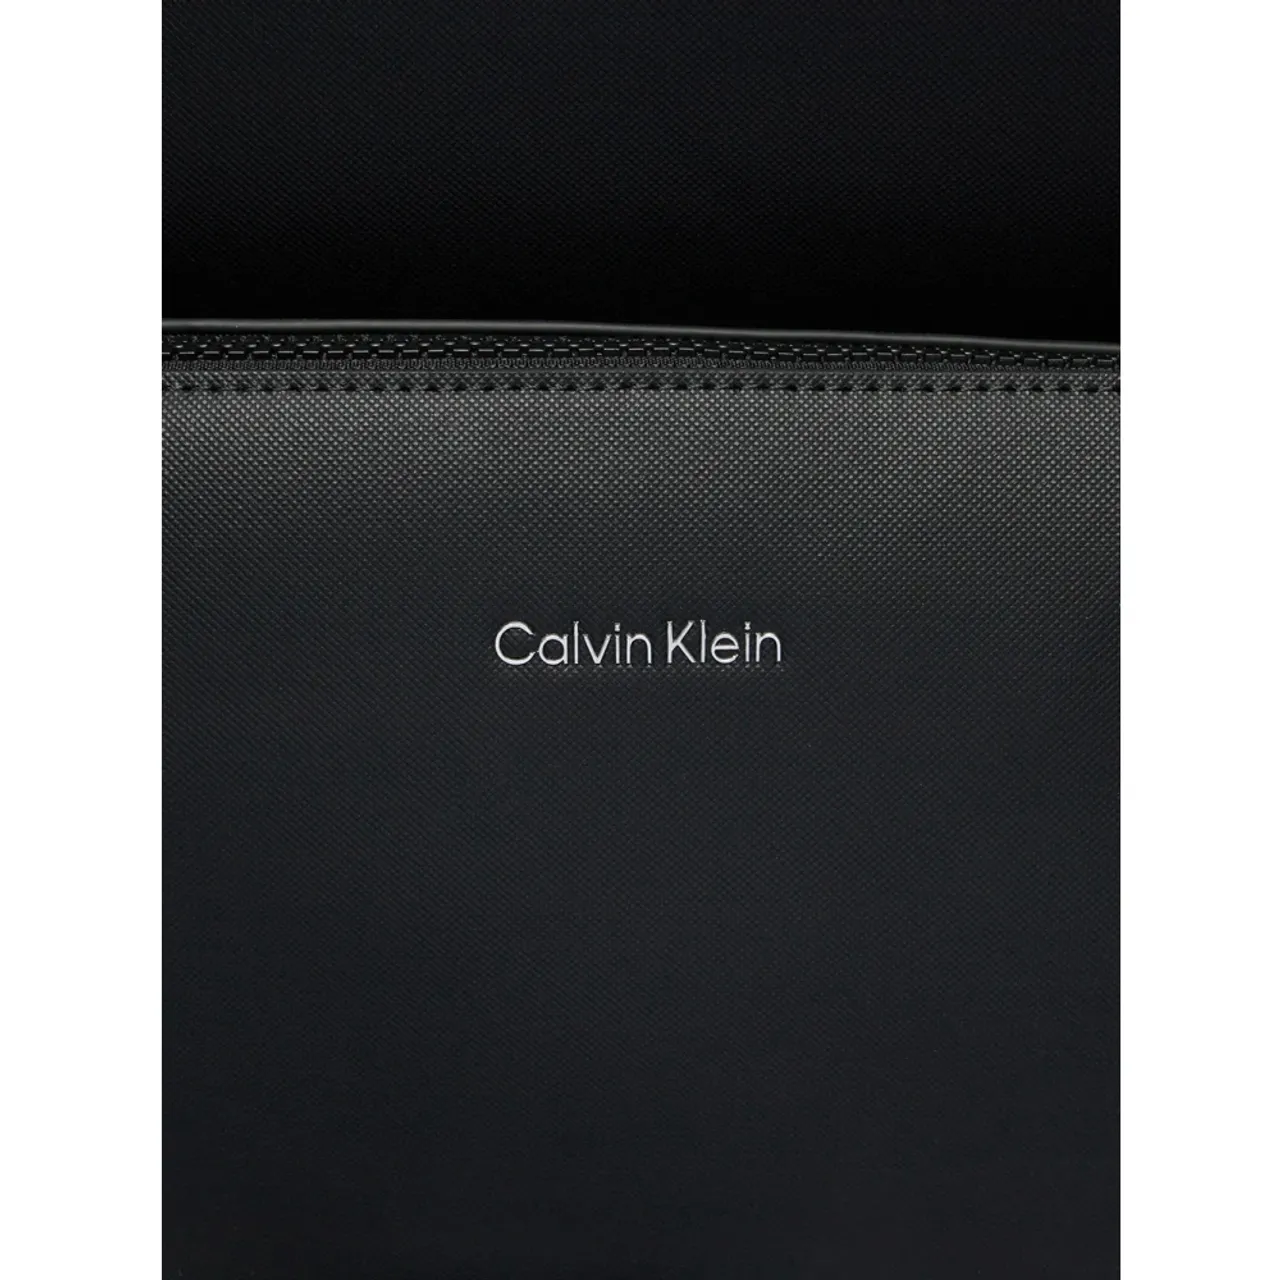 Calvin Klein , Black Backpack for Women ,Black female, Sizes: ONE SIZE